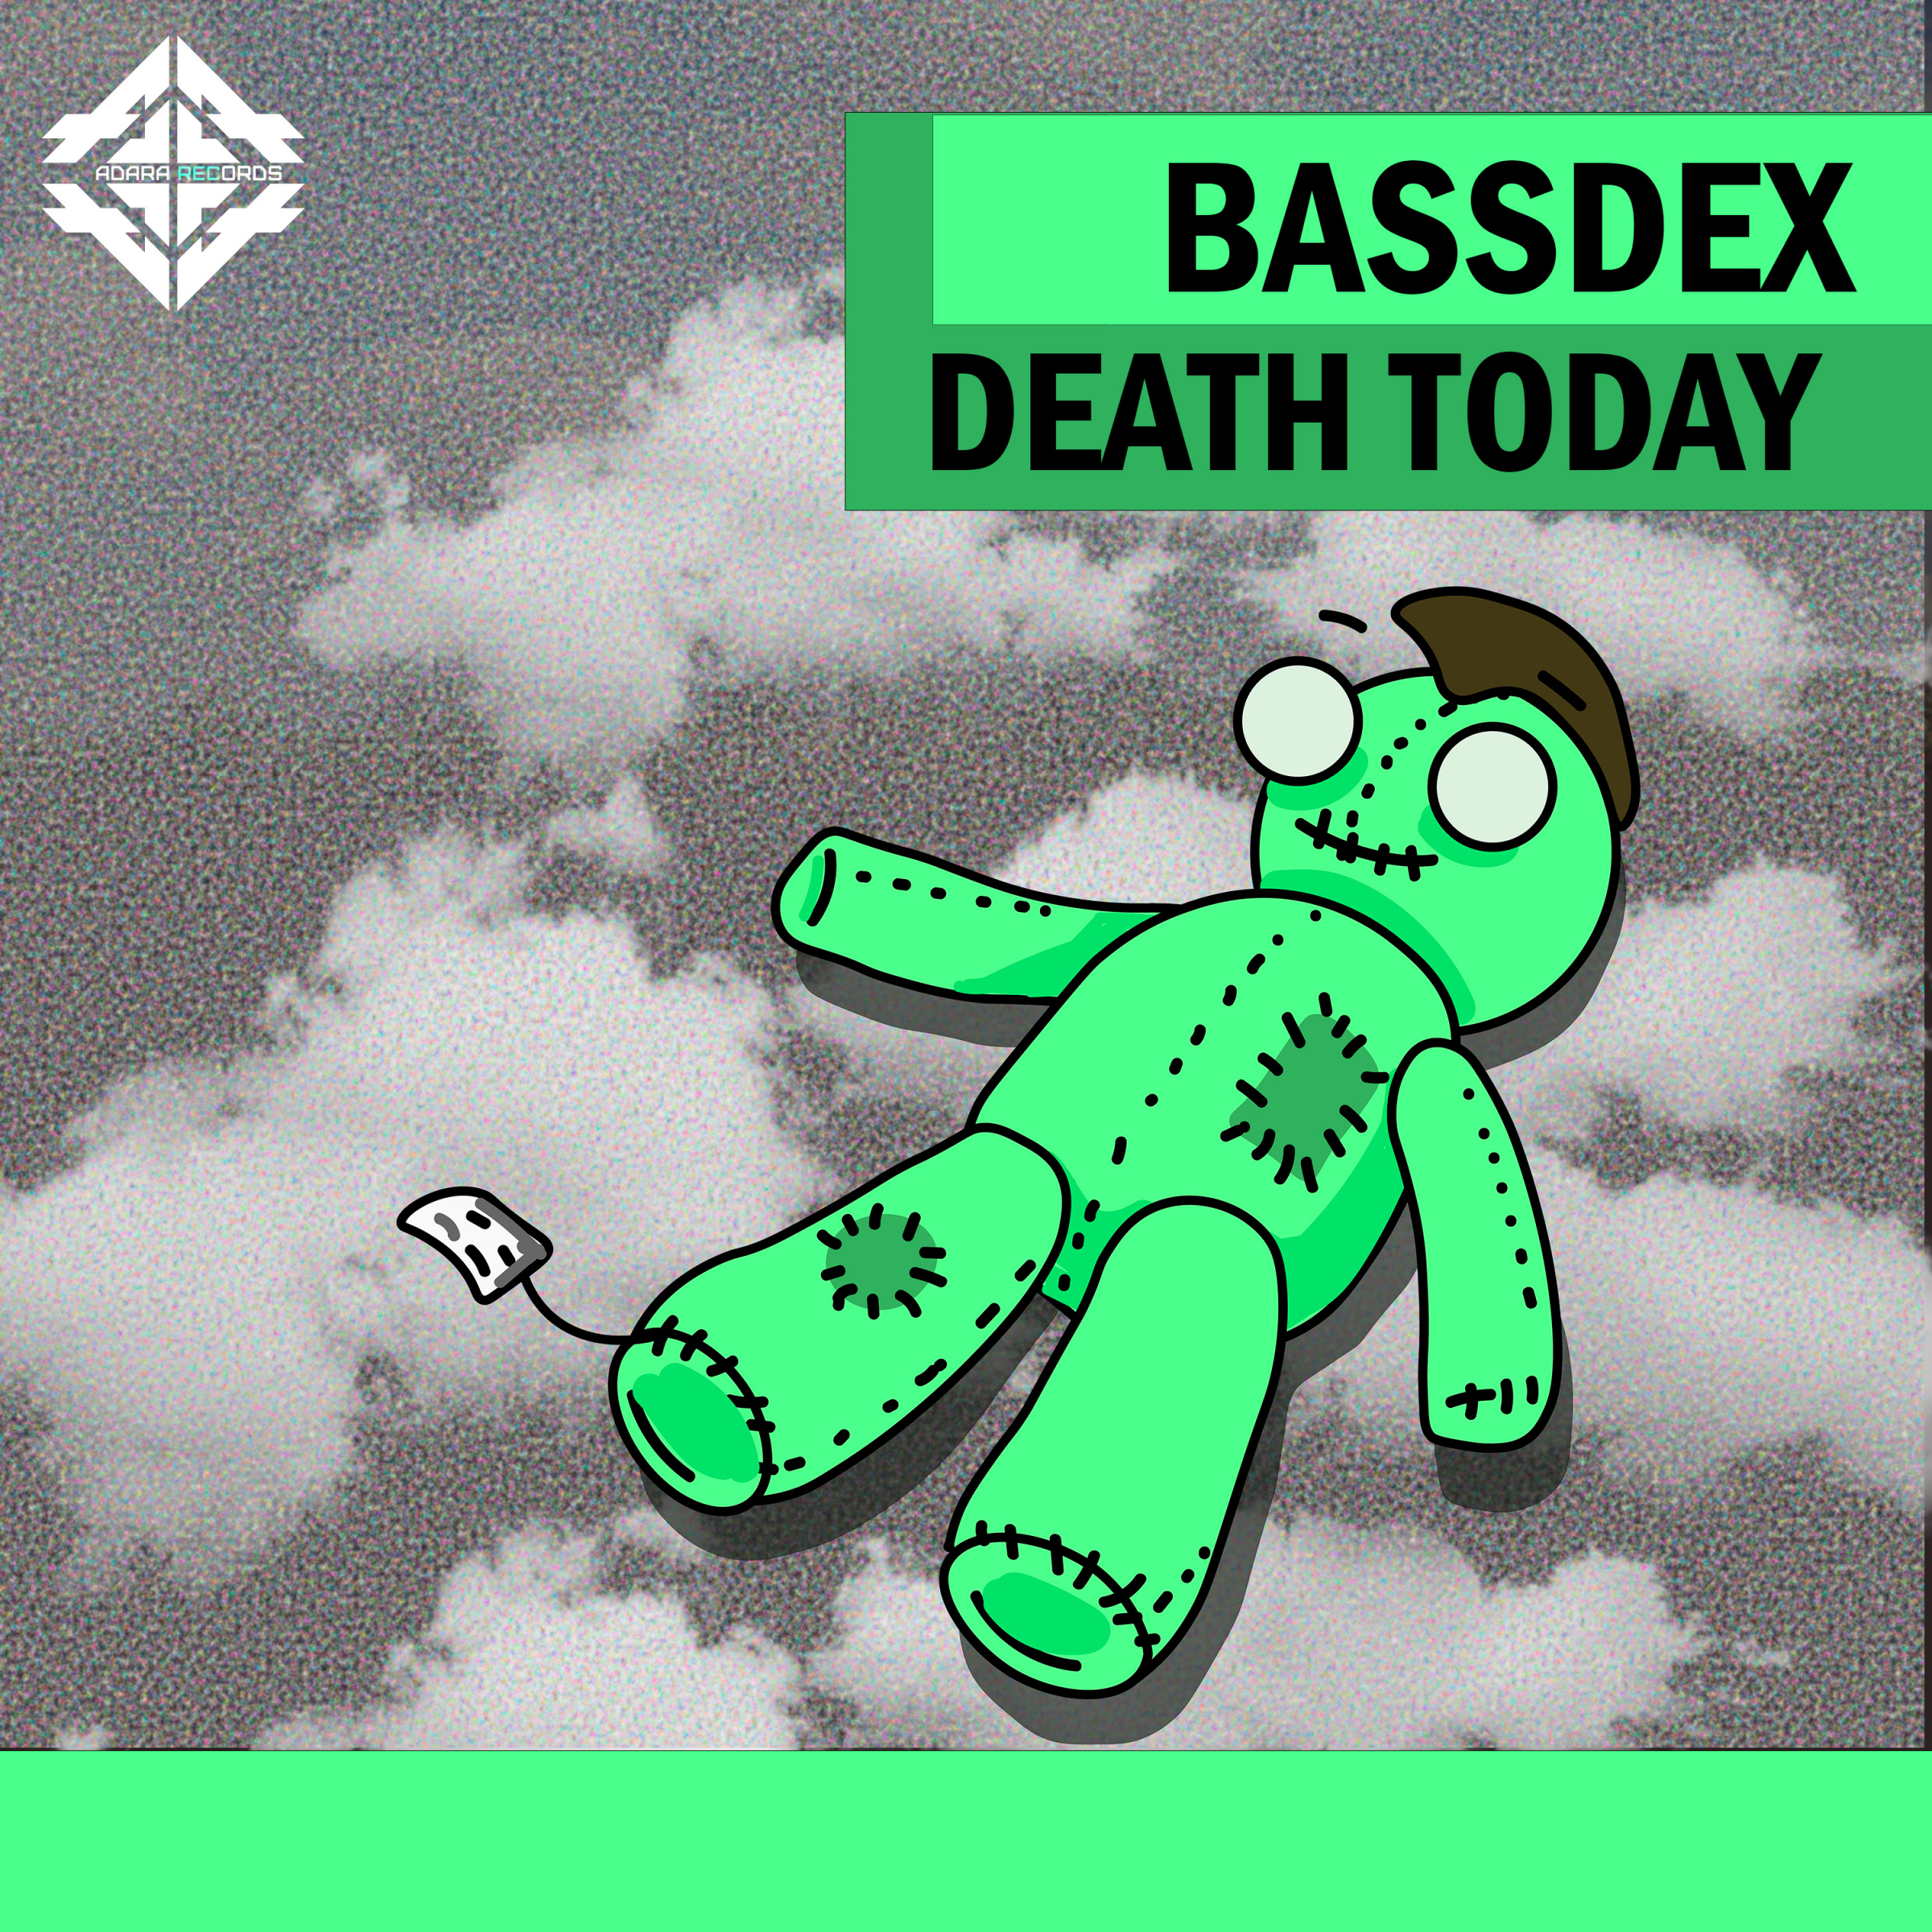 Deaths today. BASSDEX. DJ BASSDEX.